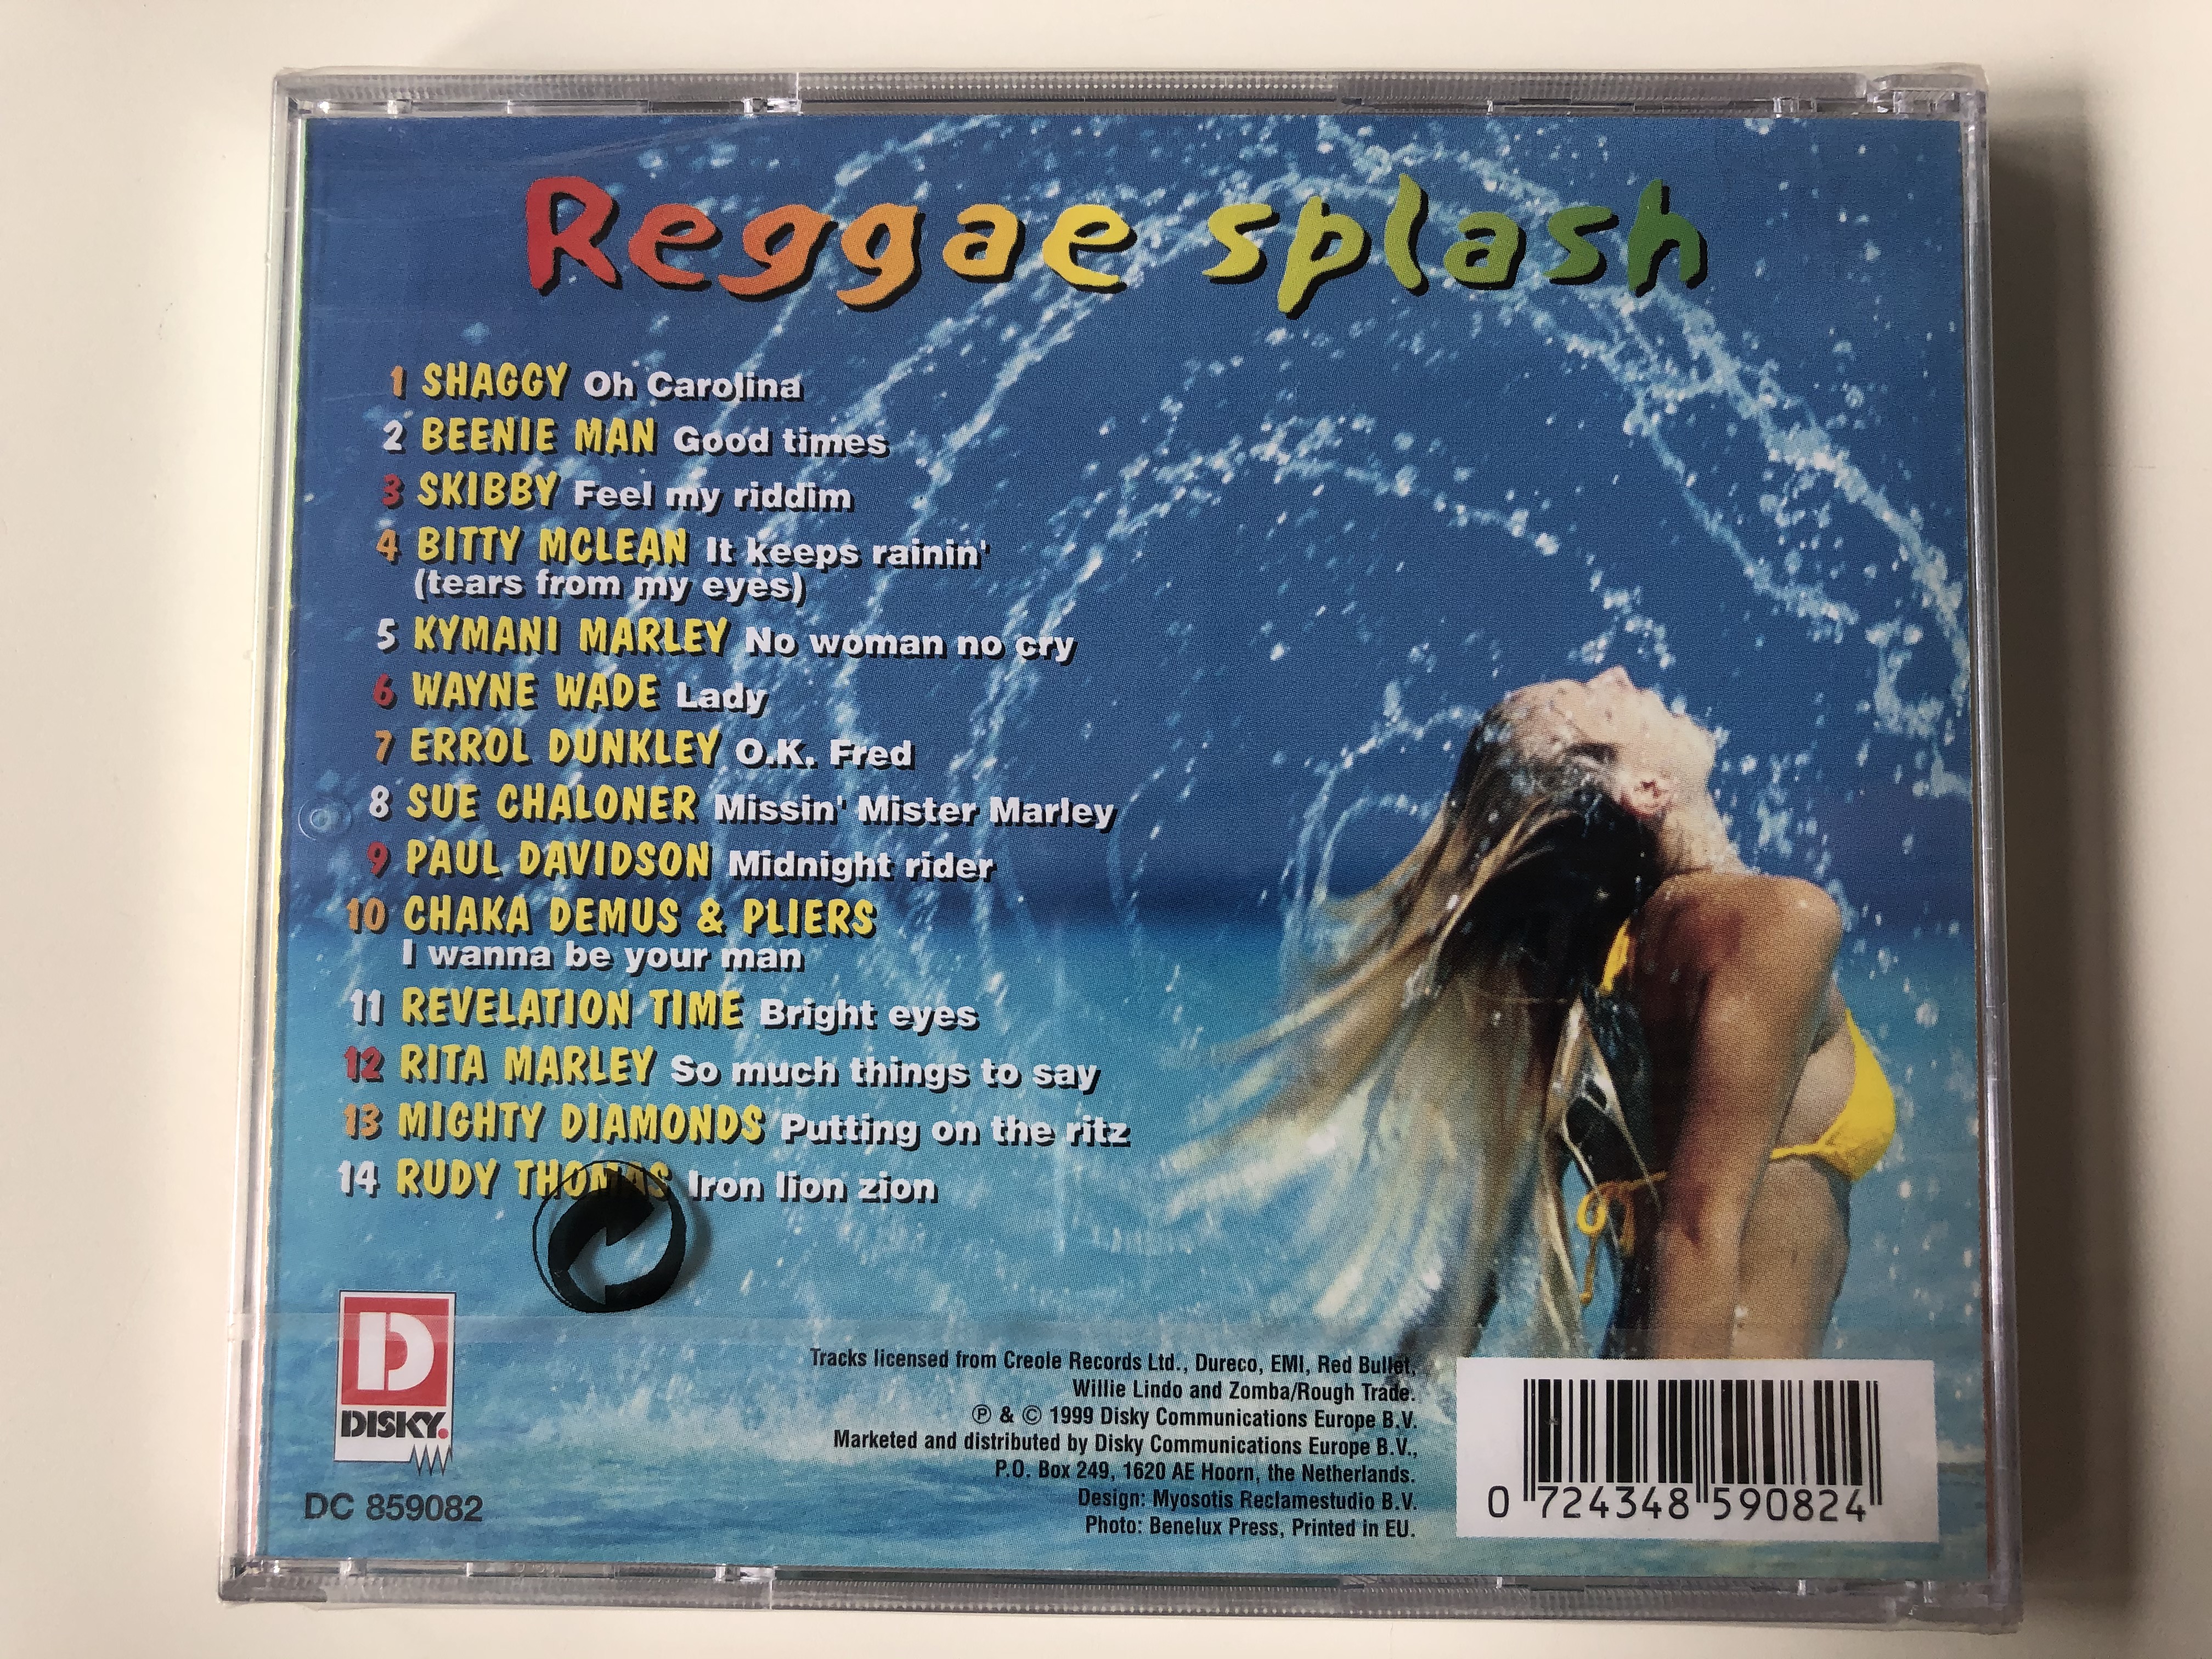 reggae-splash-shaggy-oh-carolina-rita-marley-so-much-things-to-say-wayne-wade-lady-errol-dunkley-ok-fred-skibby-feel-my-riddim-disky-audio-cd-1999-dc-859082-2-.jpg